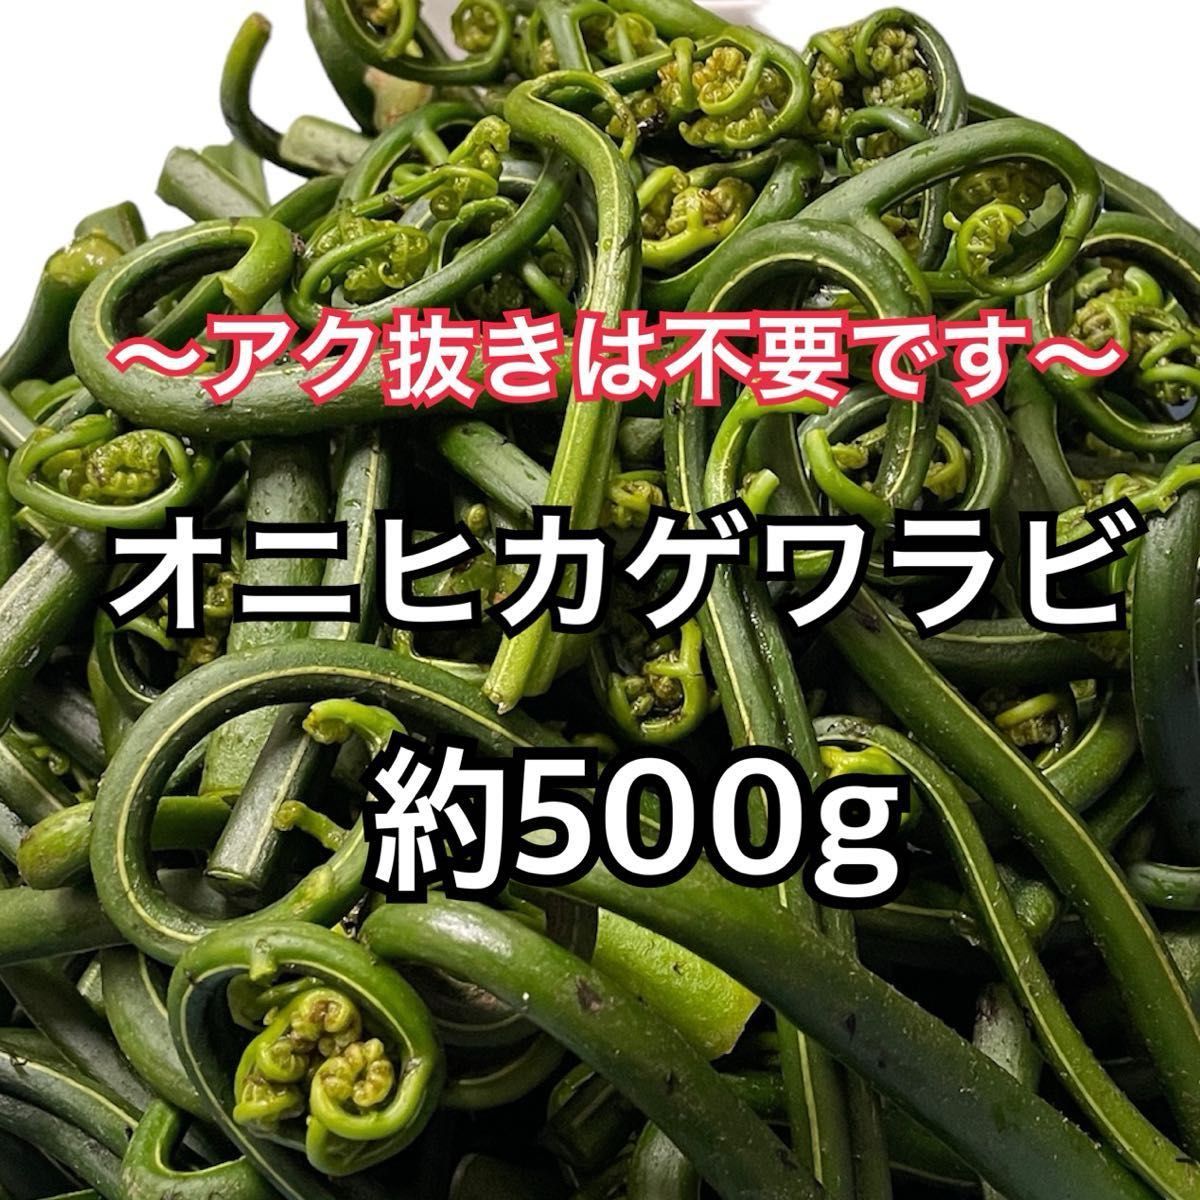 [即日発送可能] 兵庫県産 天然 山菜 オニヒカゲワラビ 約500g